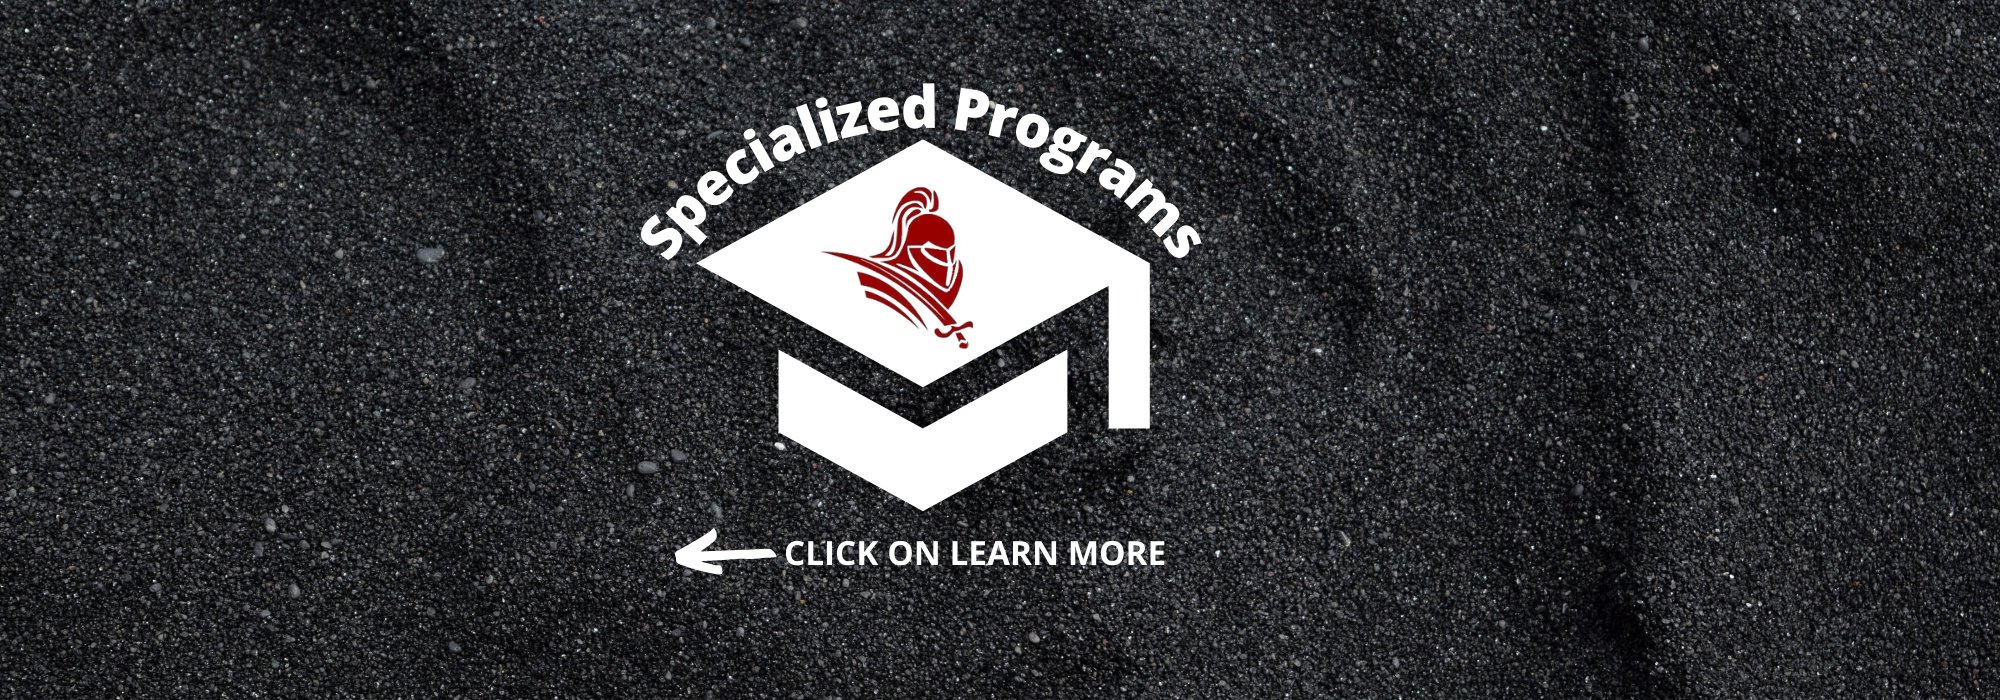 Specialized Programs